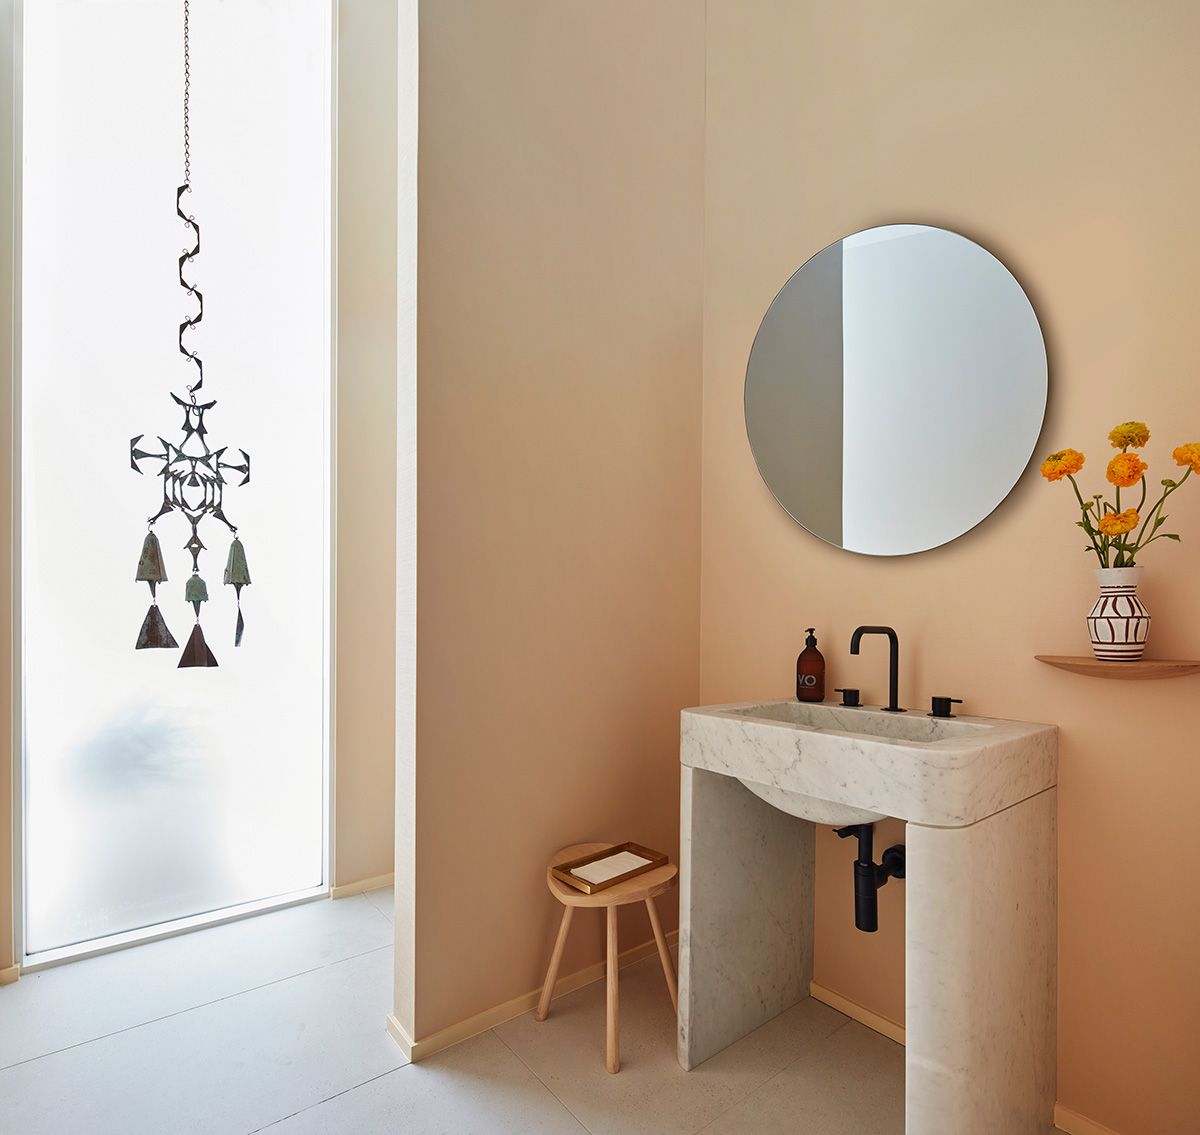 Baños con espejos redondos: 7 razones por qué quedan tan estilosos